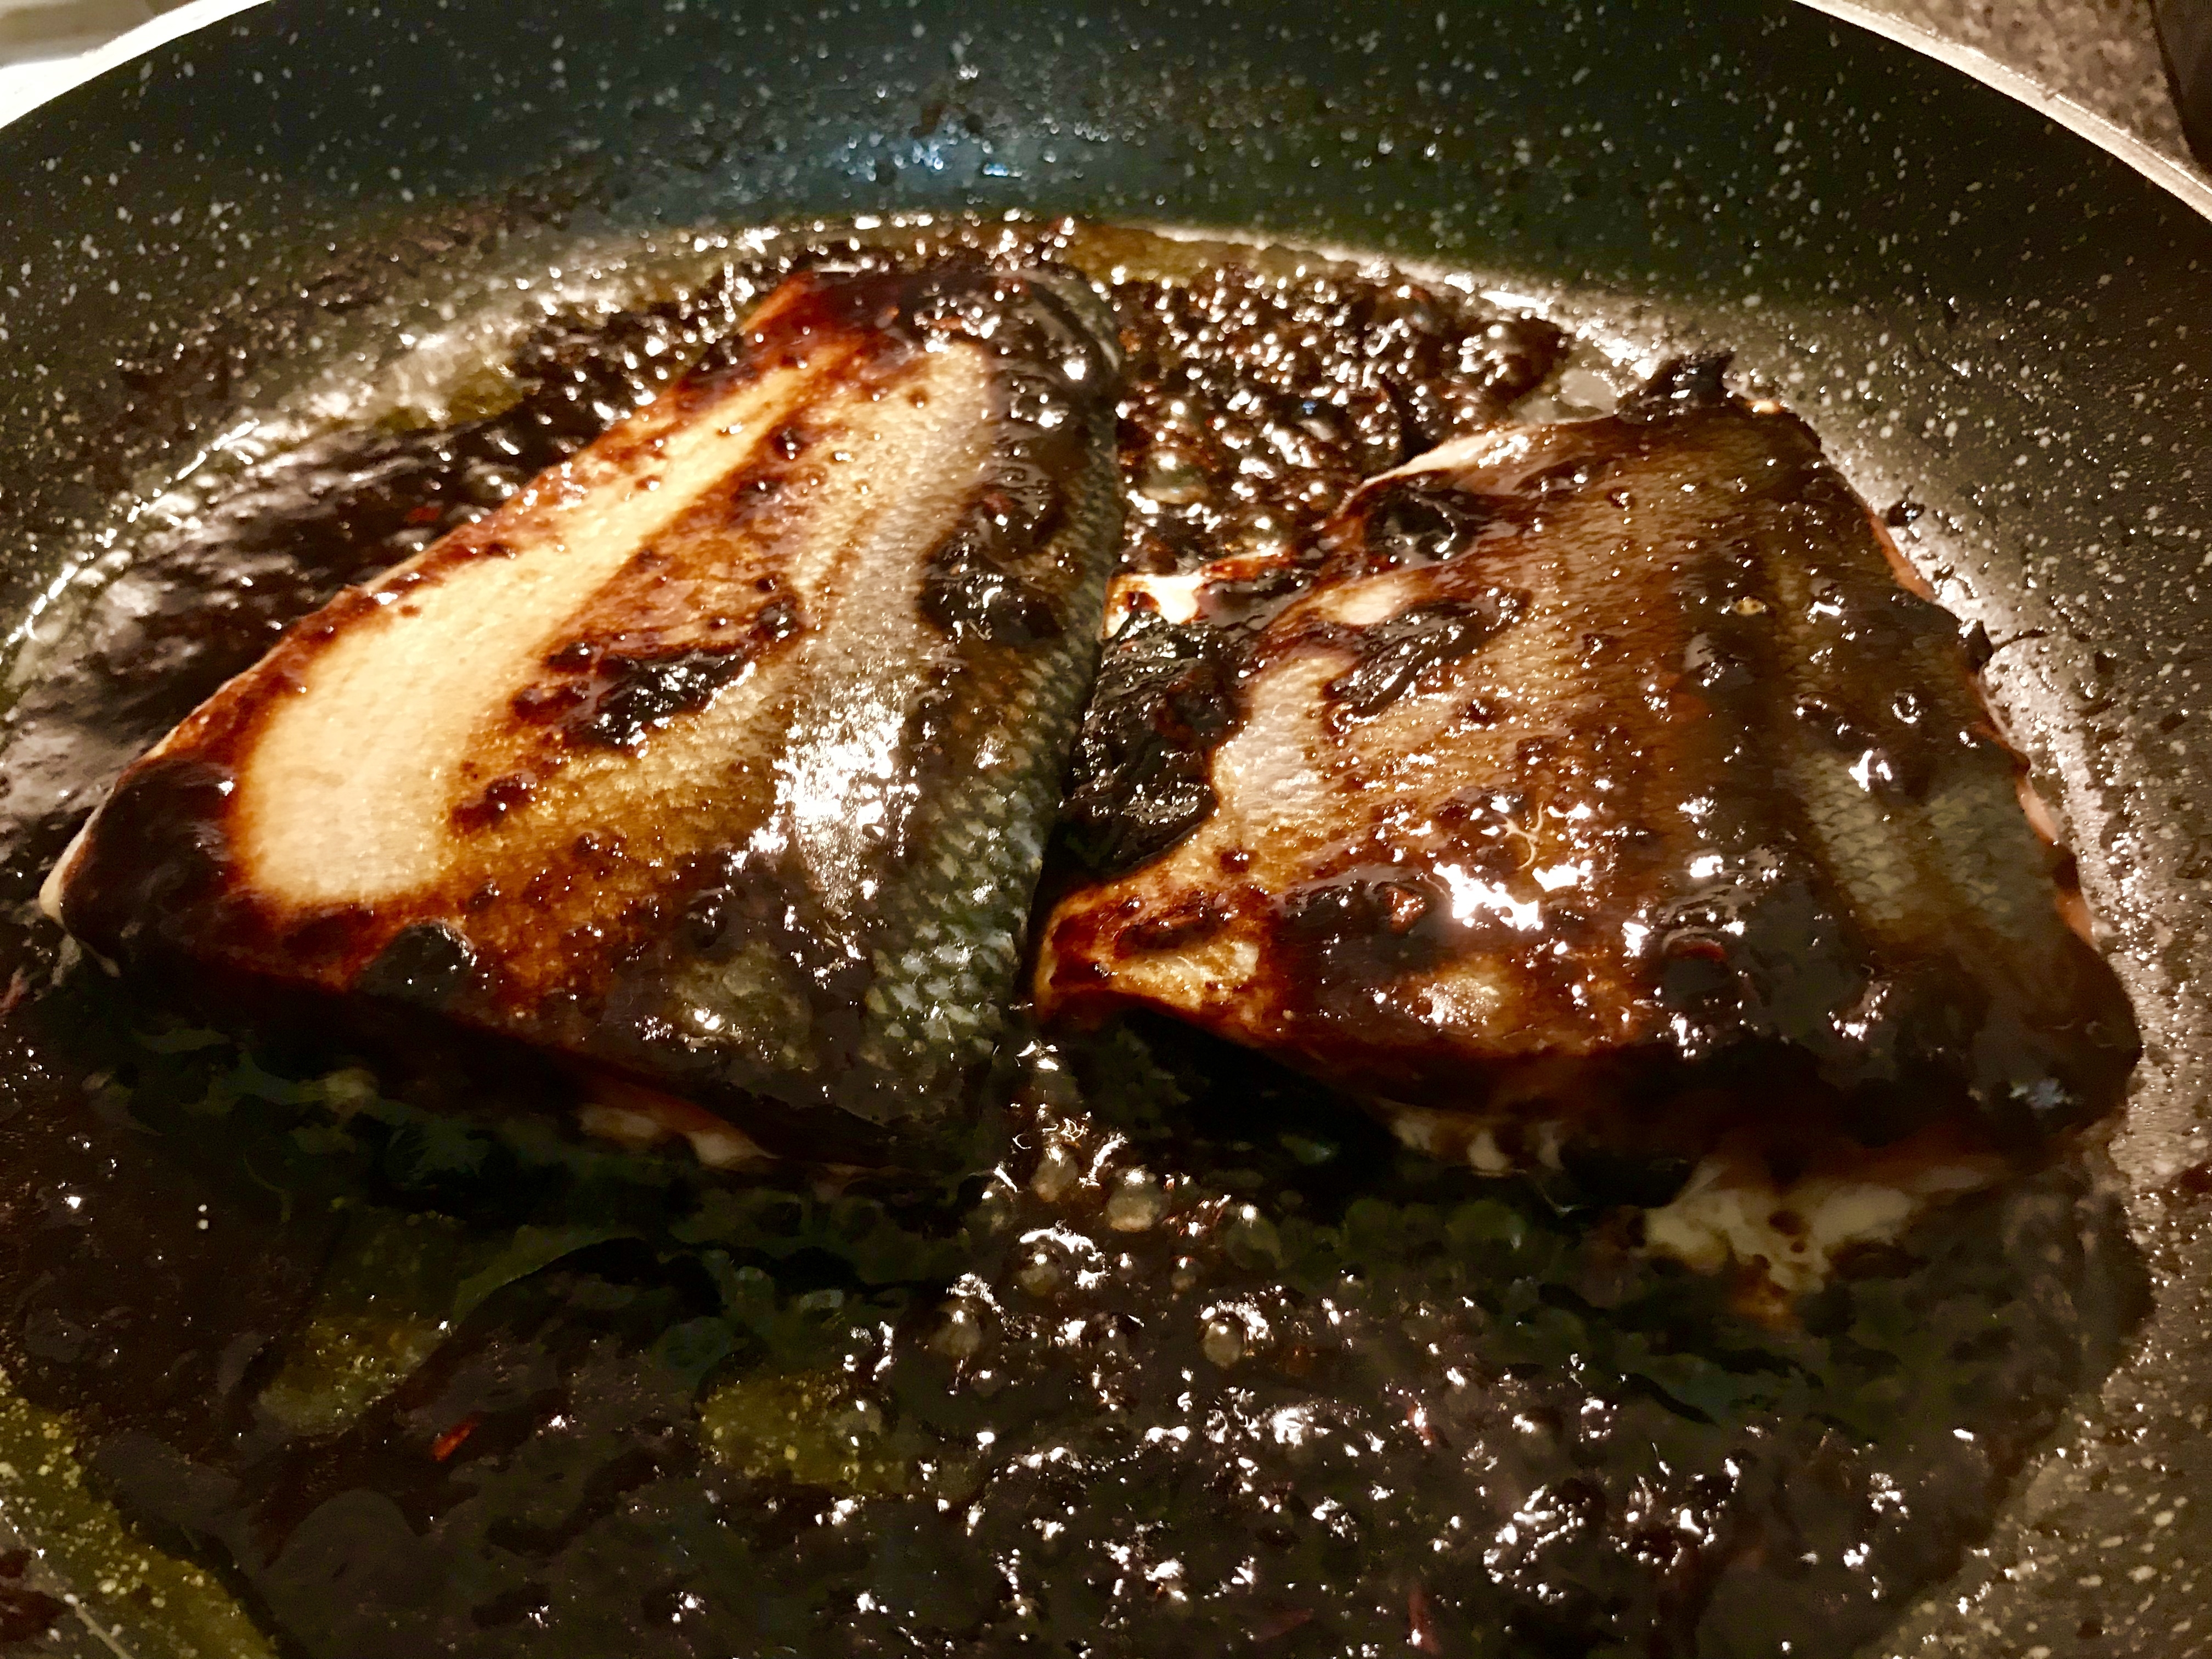 Salmon with black garlic glaze